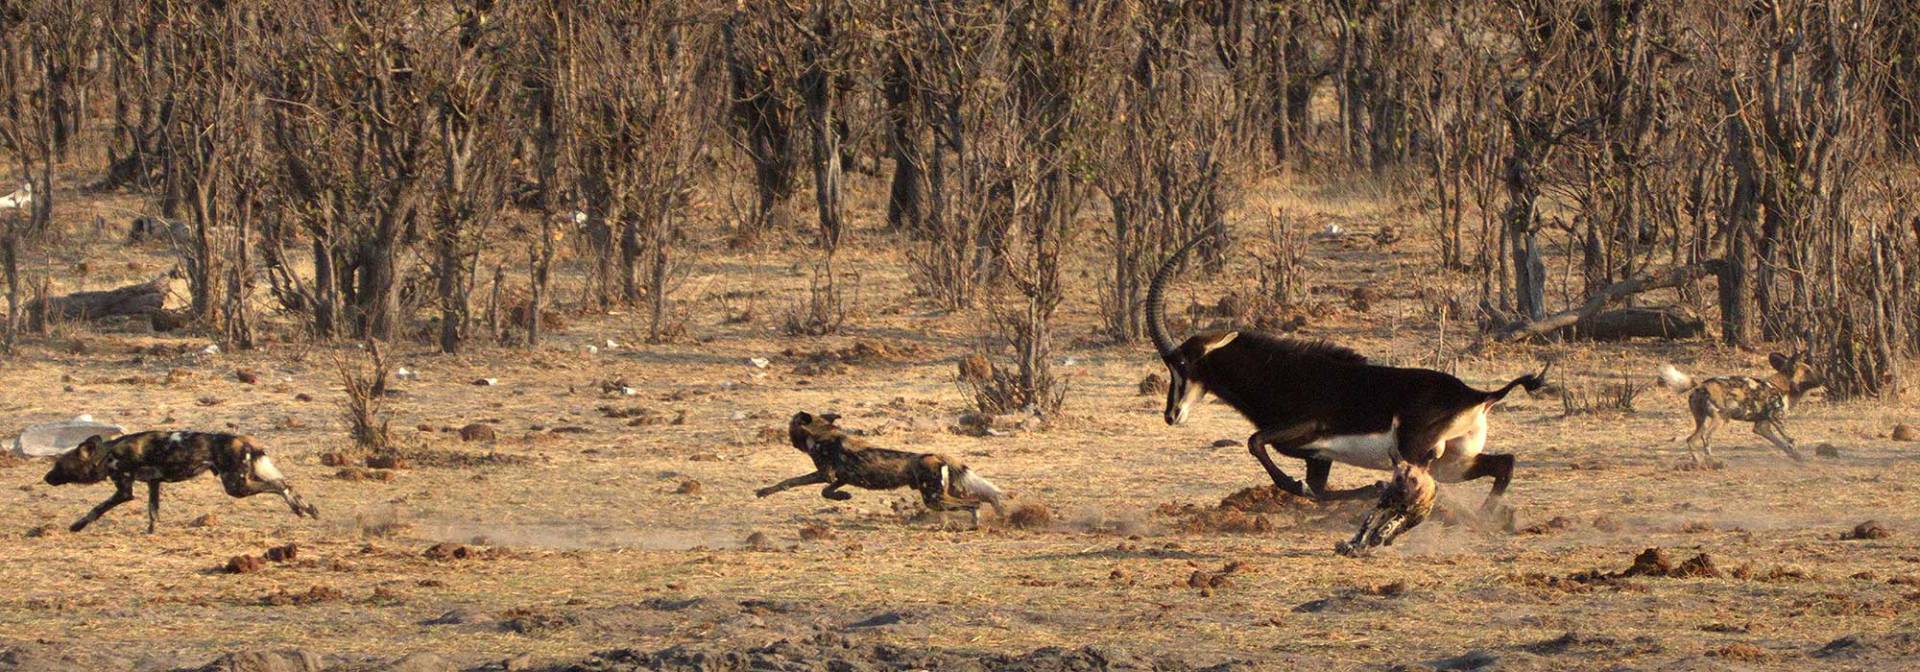 Rappenantilope jagt afrikanische Wildhunde